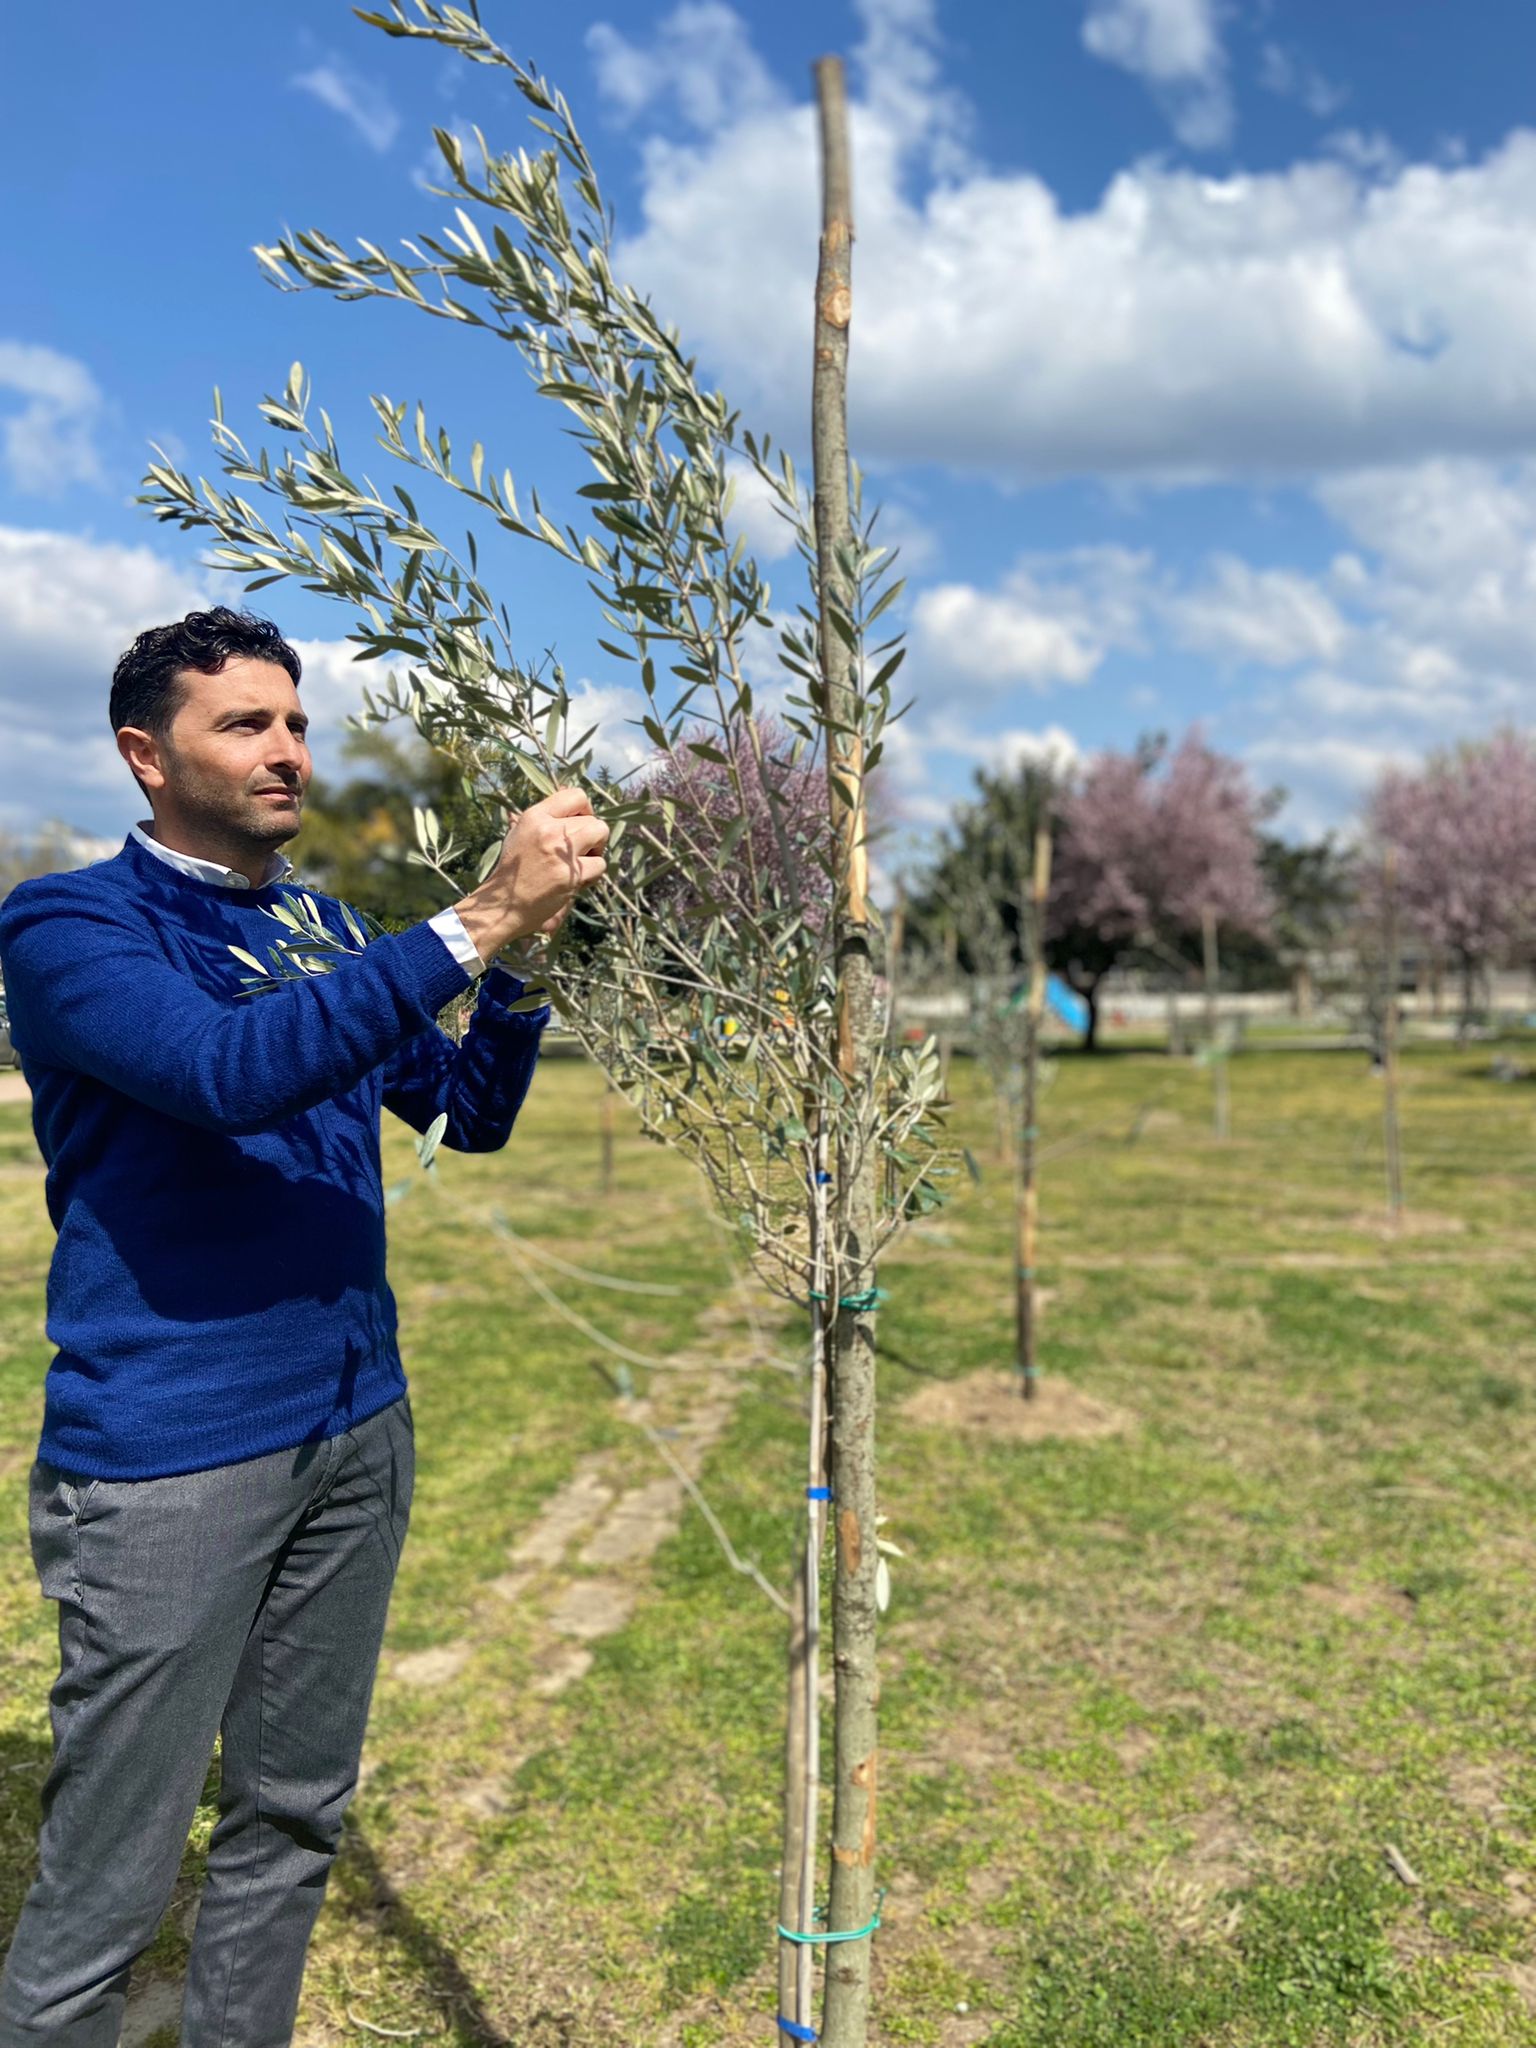 Pontecagnano Faiano: Rotary Club Salerno Picentia, 51 alberi donati a città